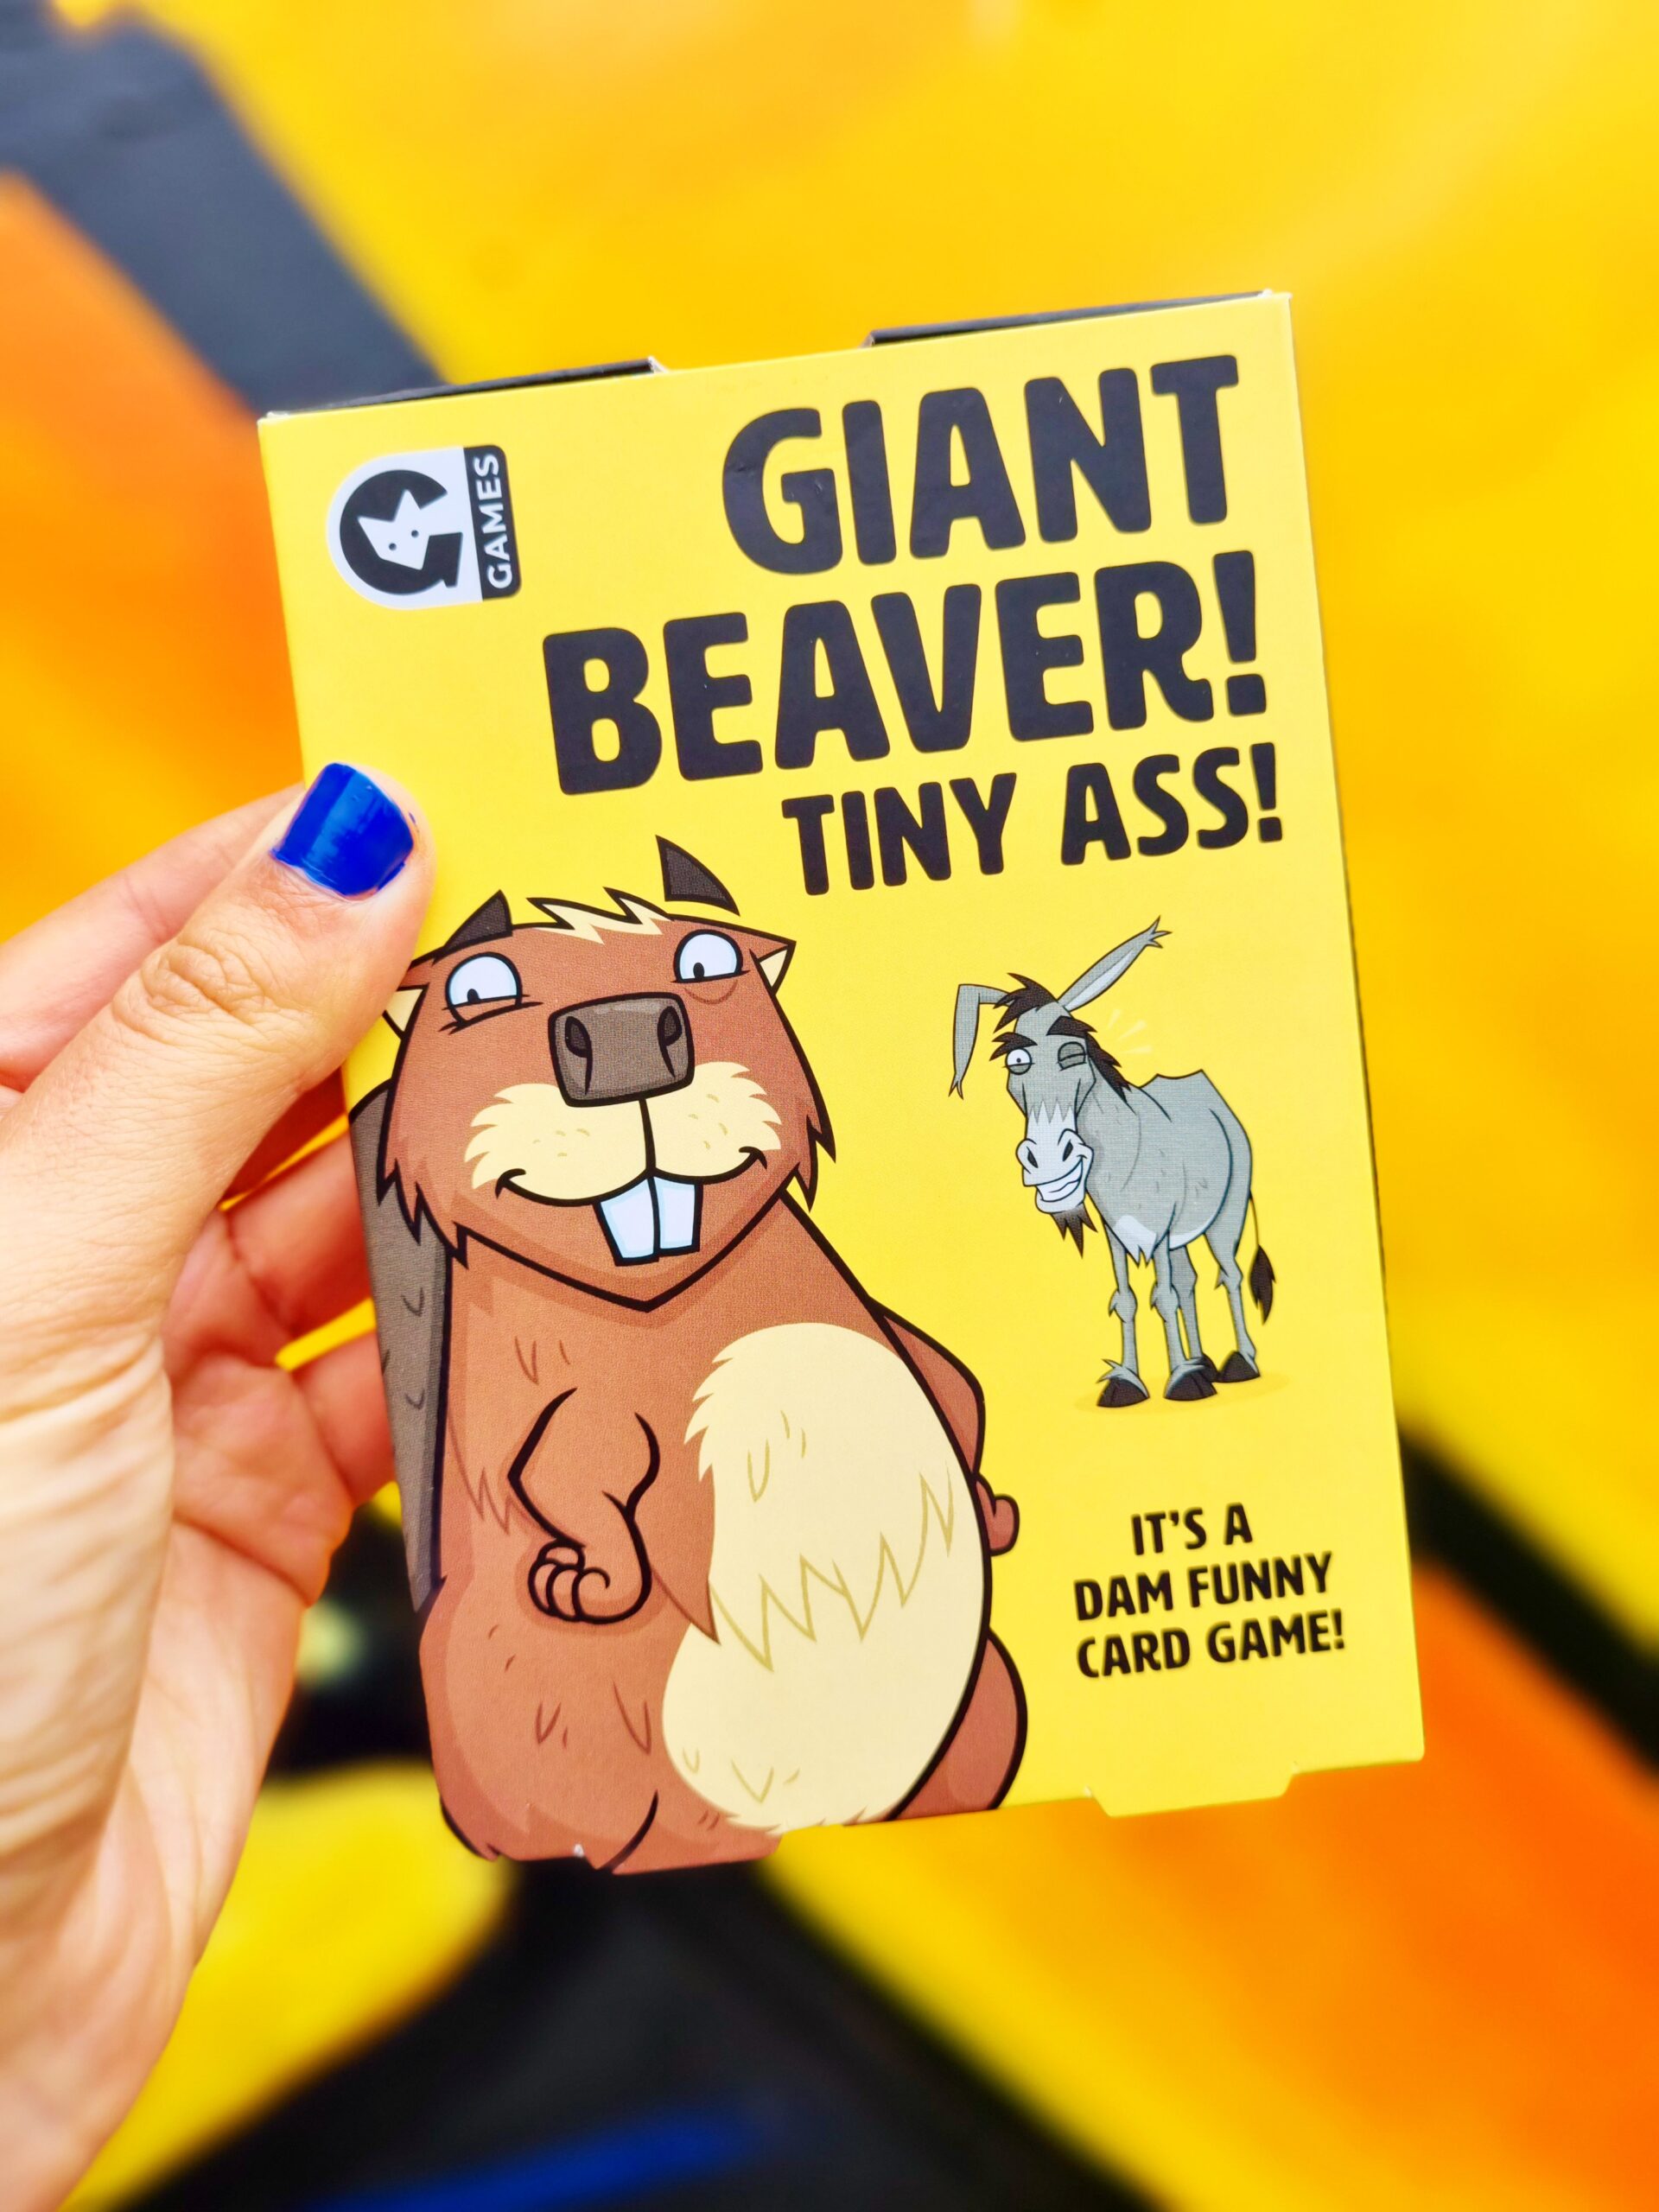 <img src="giant beaver.jpg" alt="giant beaver tiny ass card game"/>